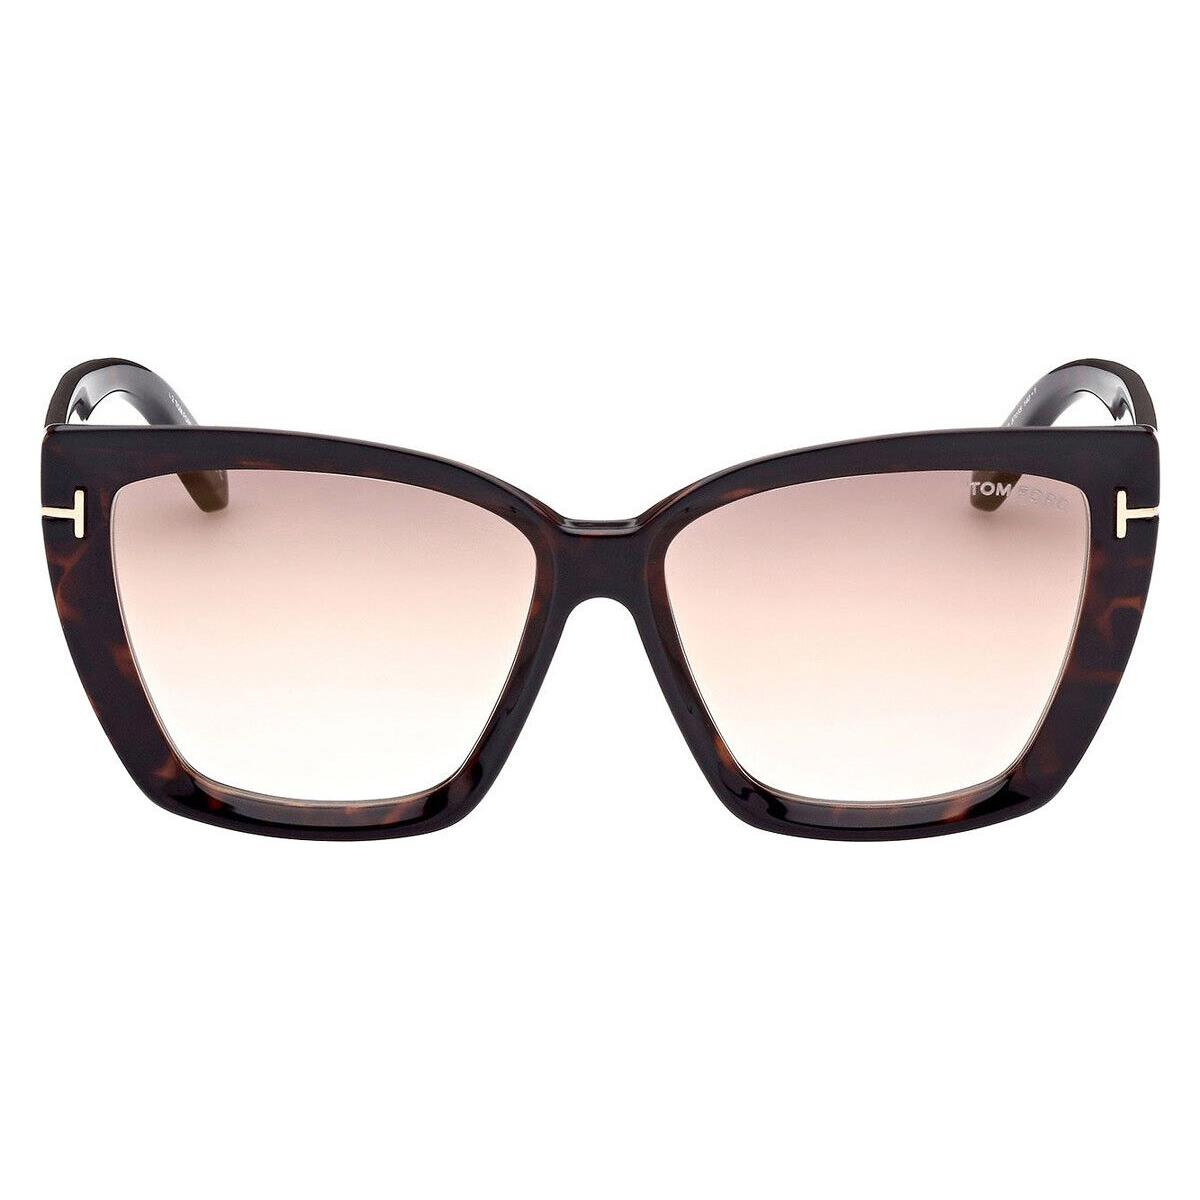 Tom Ford sunglasses  - Shiny Havana Frame, Brown/Light Gold Lens 0